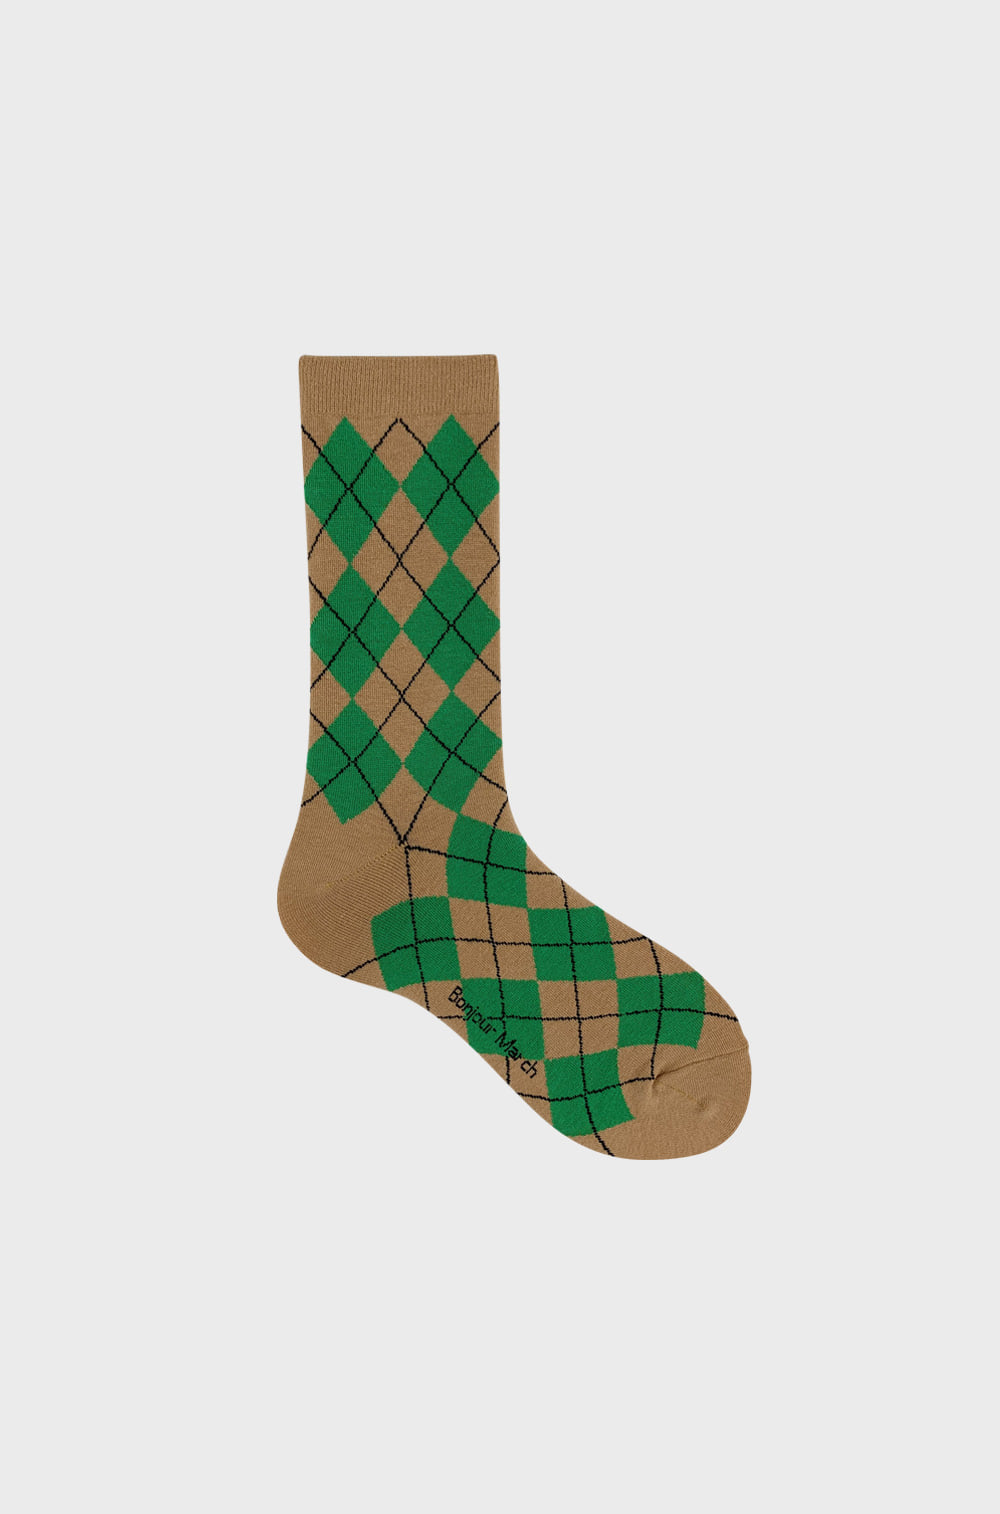 Green argyle socks